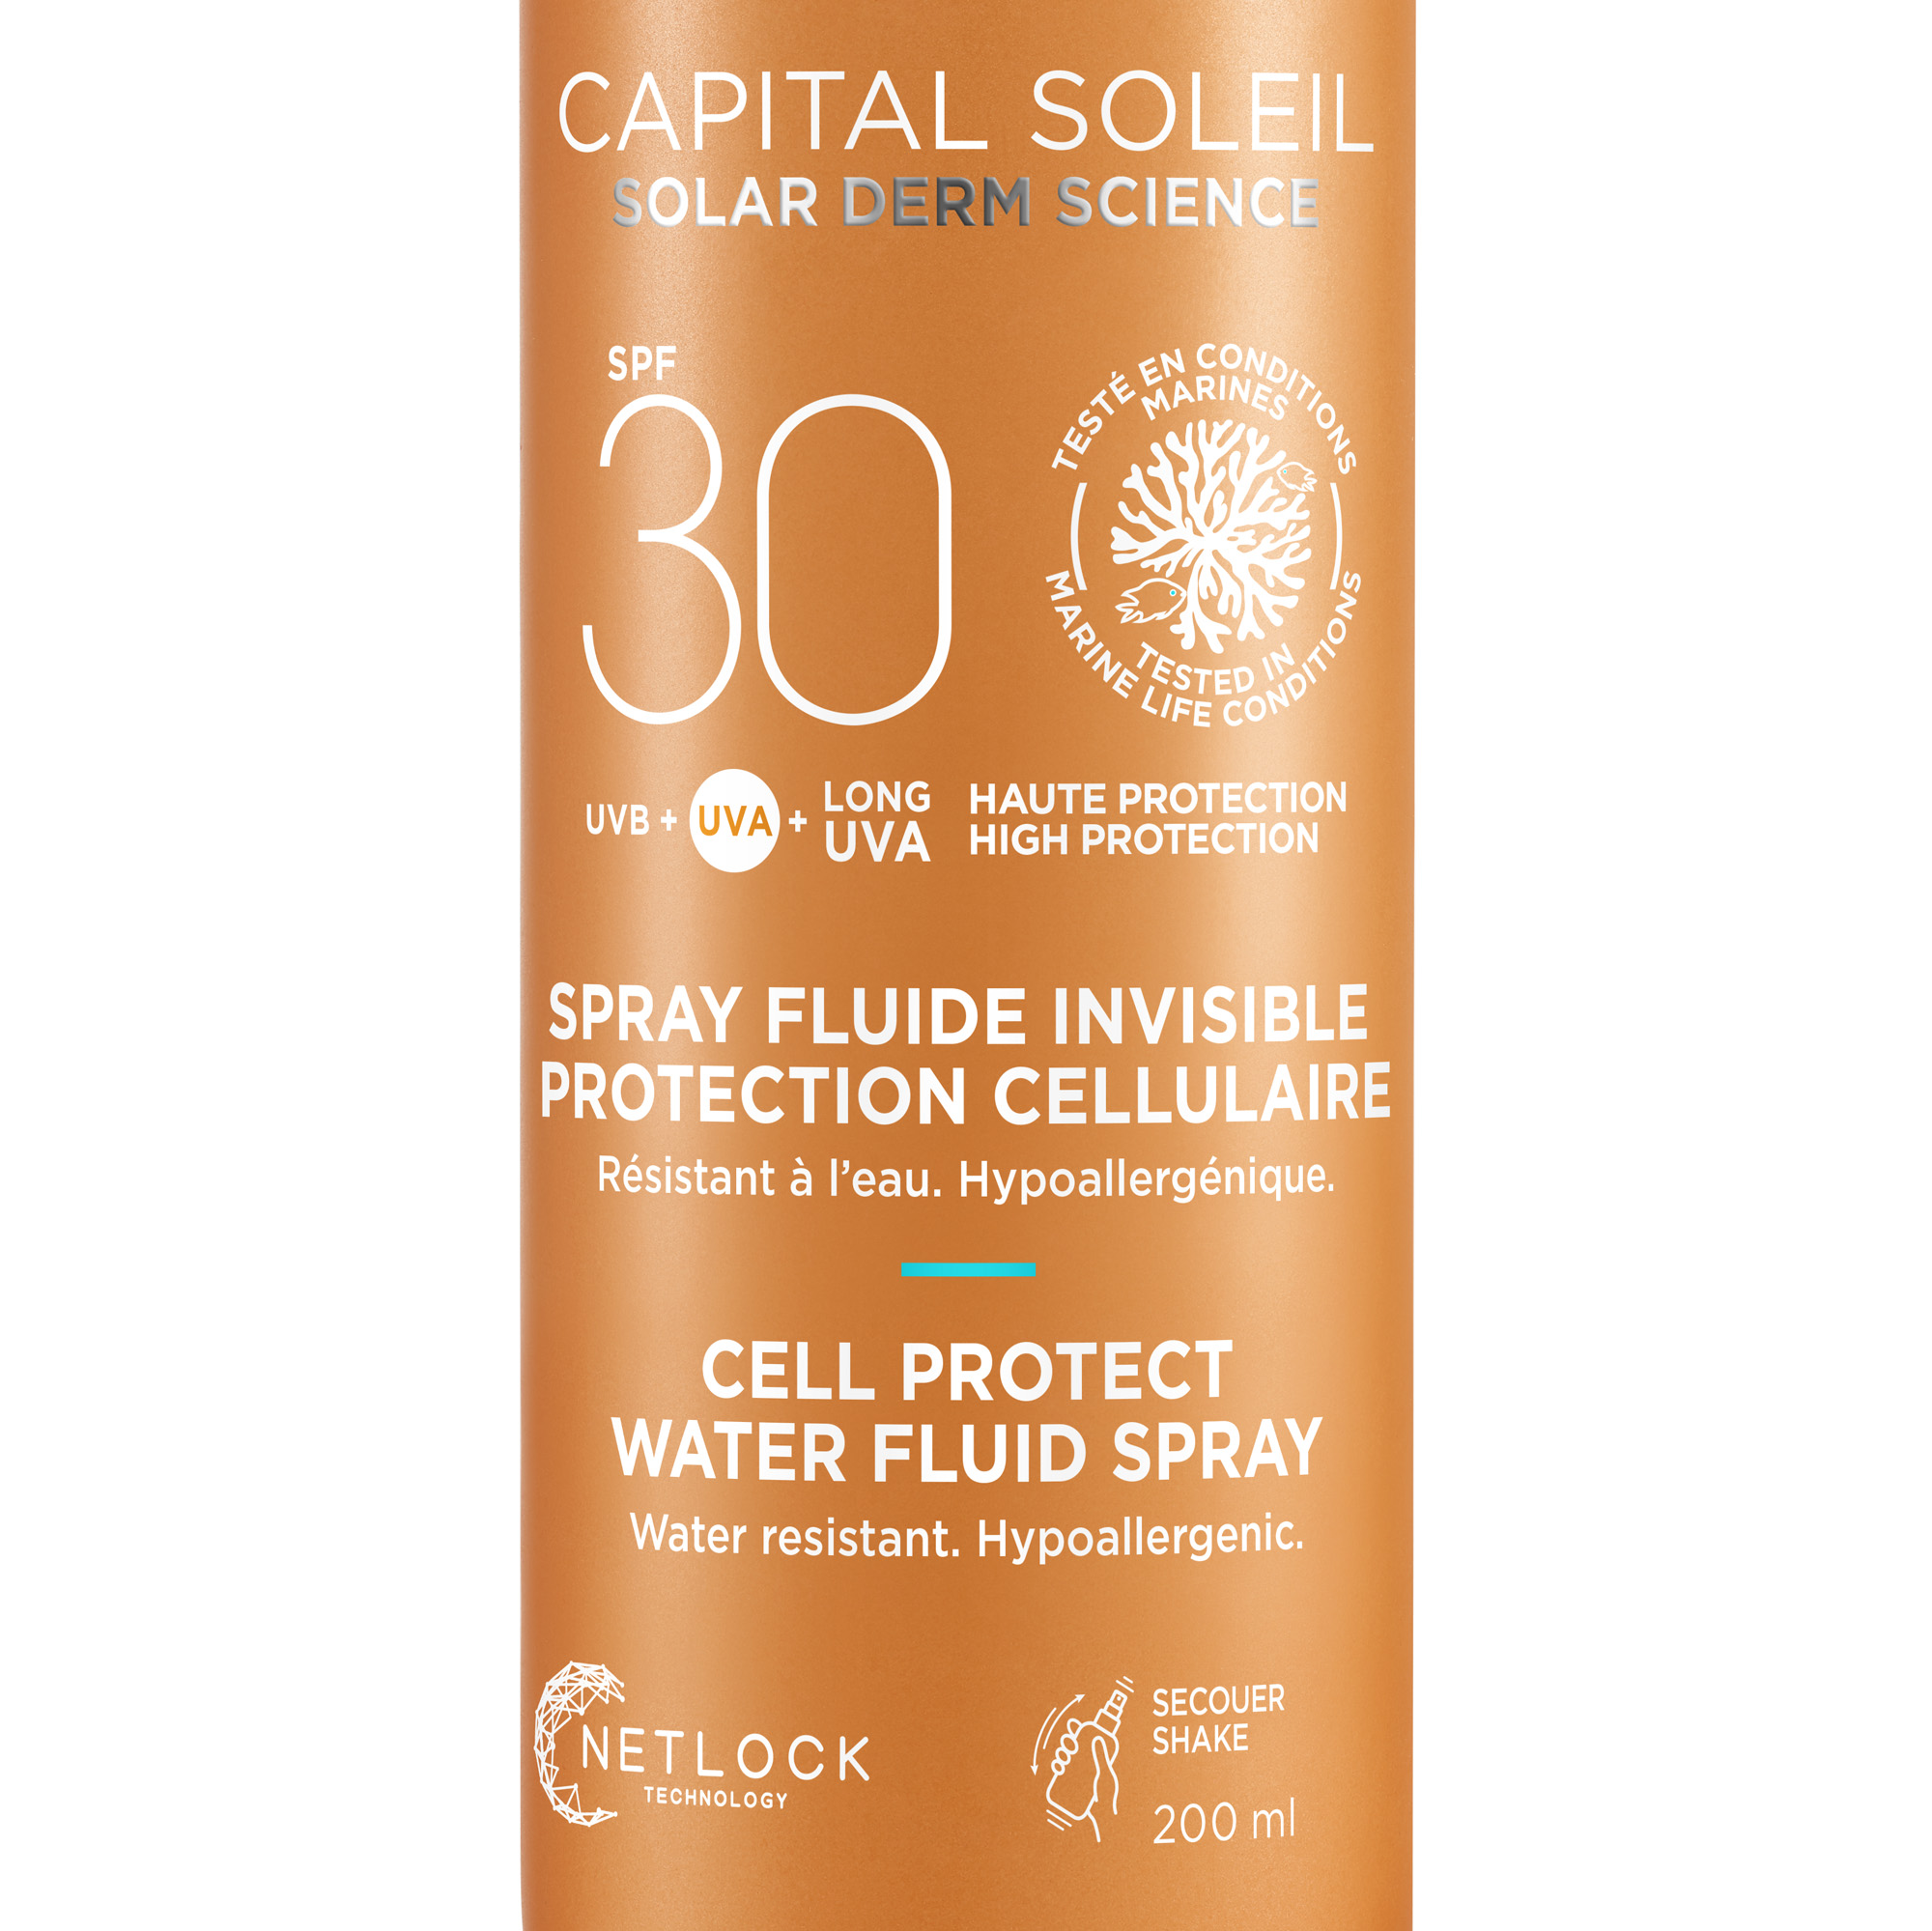 Сонцезахисний водостійкий спрей-флюїд Vichy Capital Soleil для тіла, SPF 30, 200 мл (MB494600) - фото 3